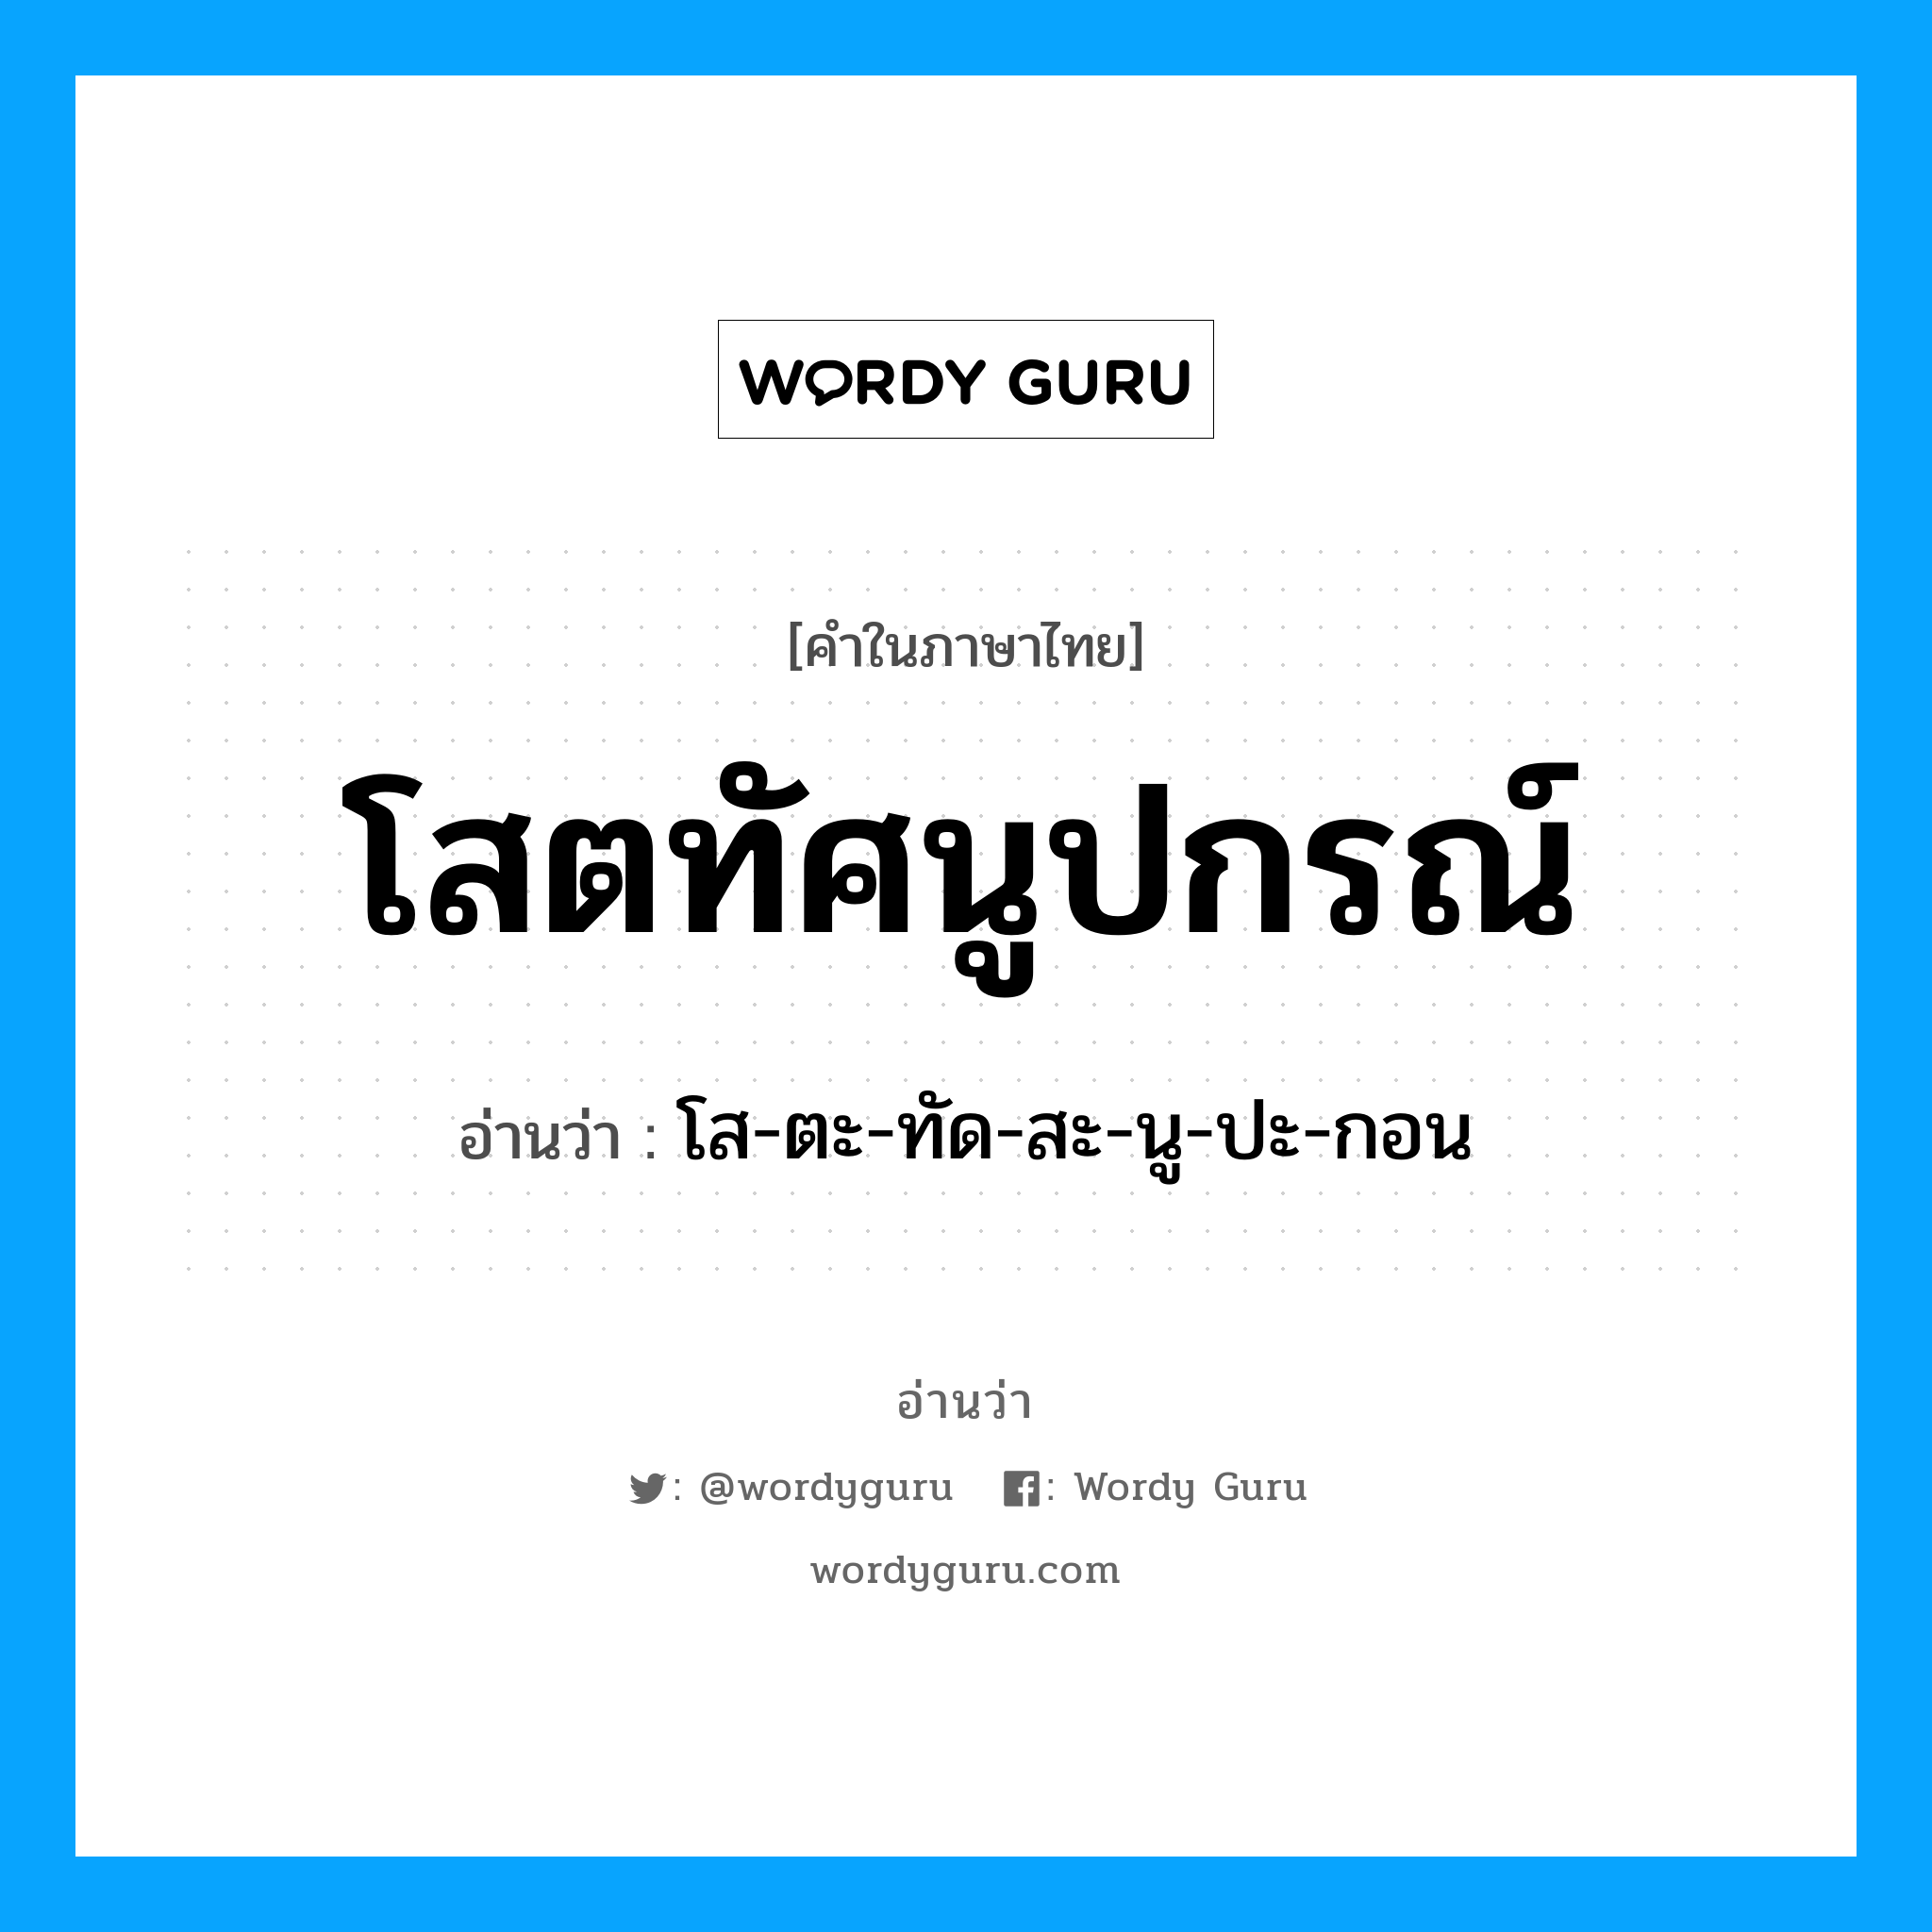 โส-ตะ-ทัด-สะ-นู-ปะ-กอน เป็นคำอ่านของคำไหน?, คำในภาษาไทย โส-ตะ-ทัด-สะ-นู-ปะ-กอน อ่านว่า โสตทัศนูปกรณ์